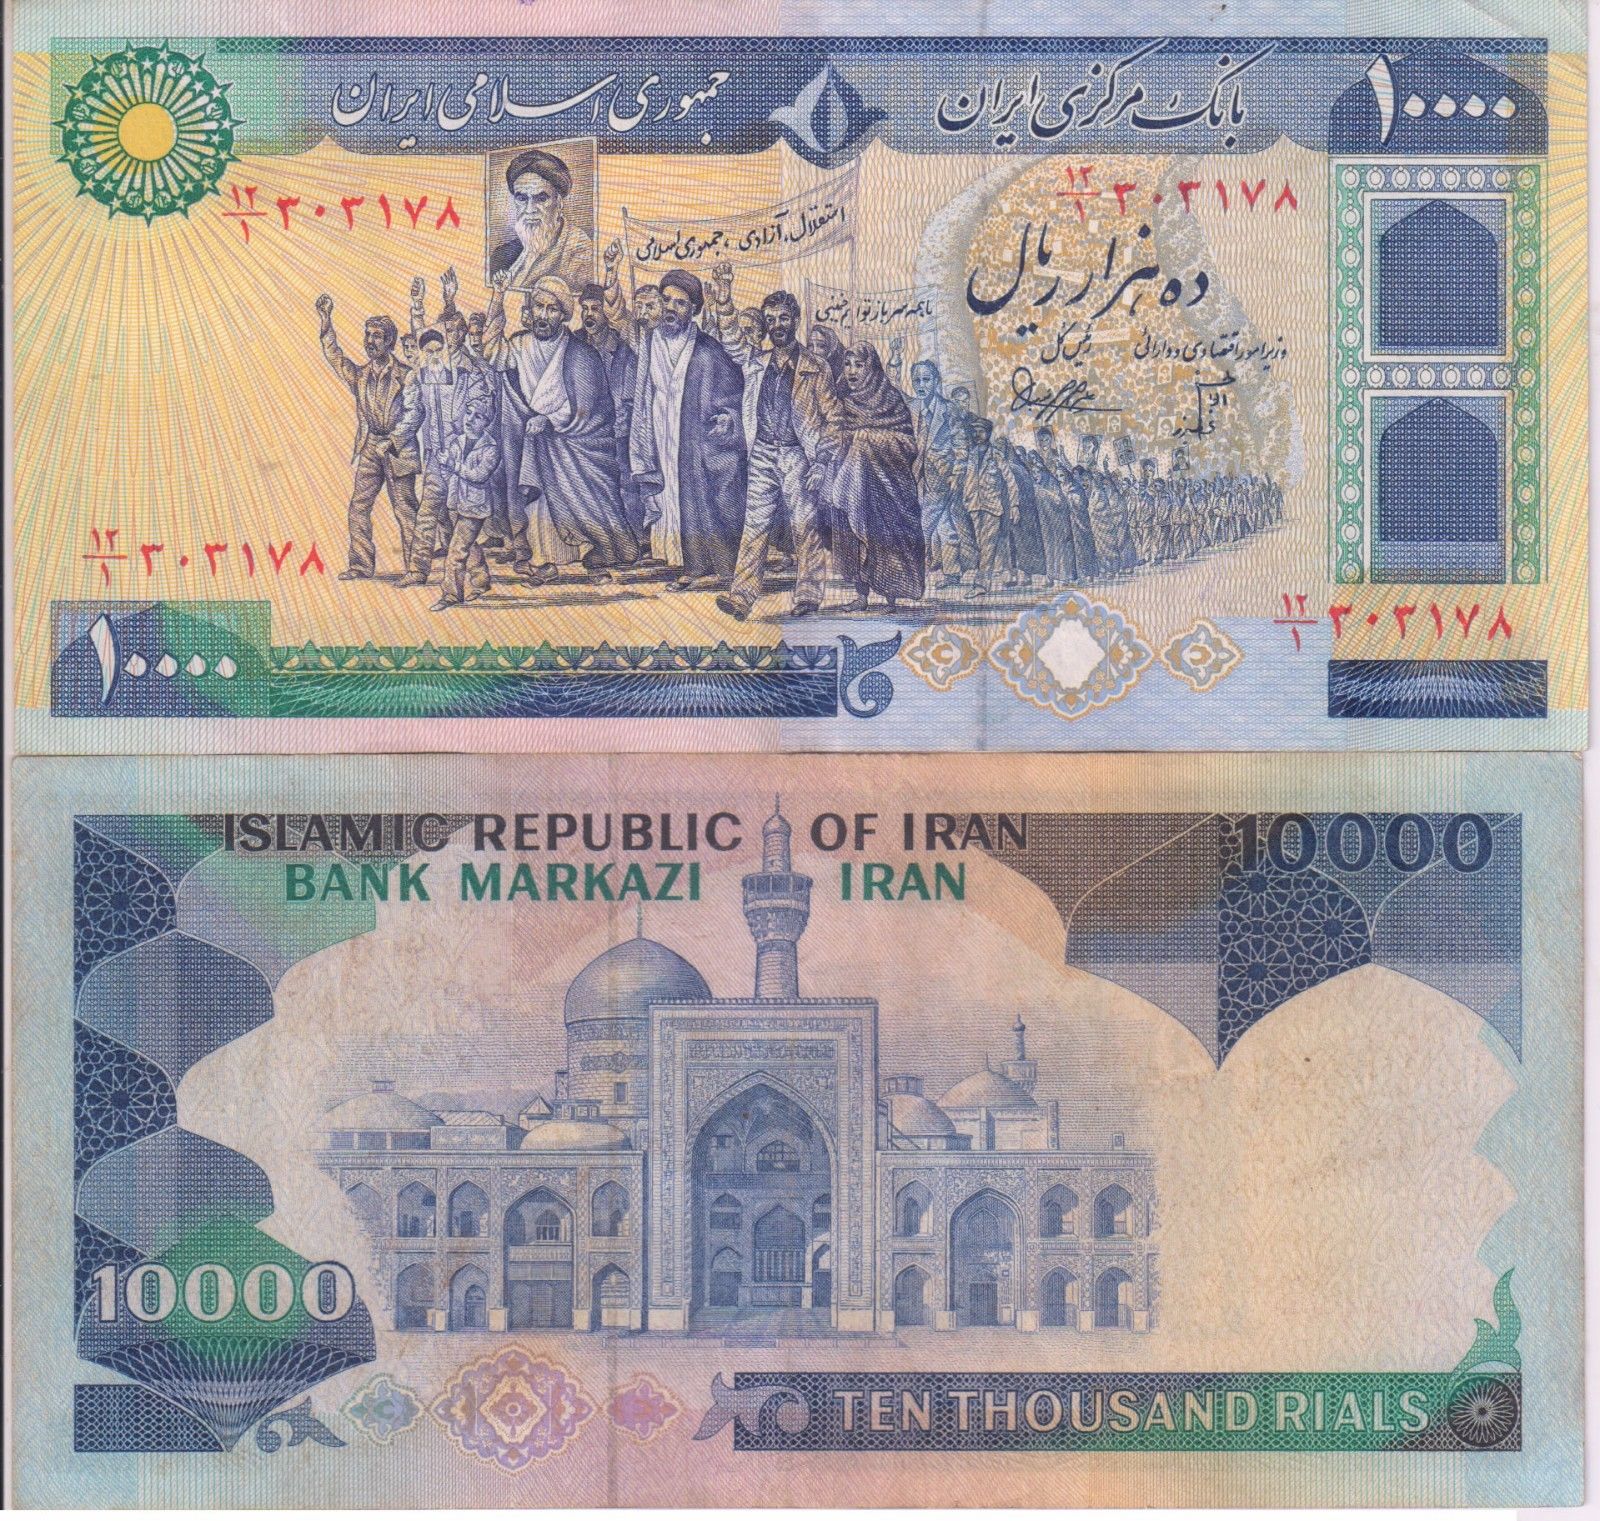 irani currency rates in pakistan